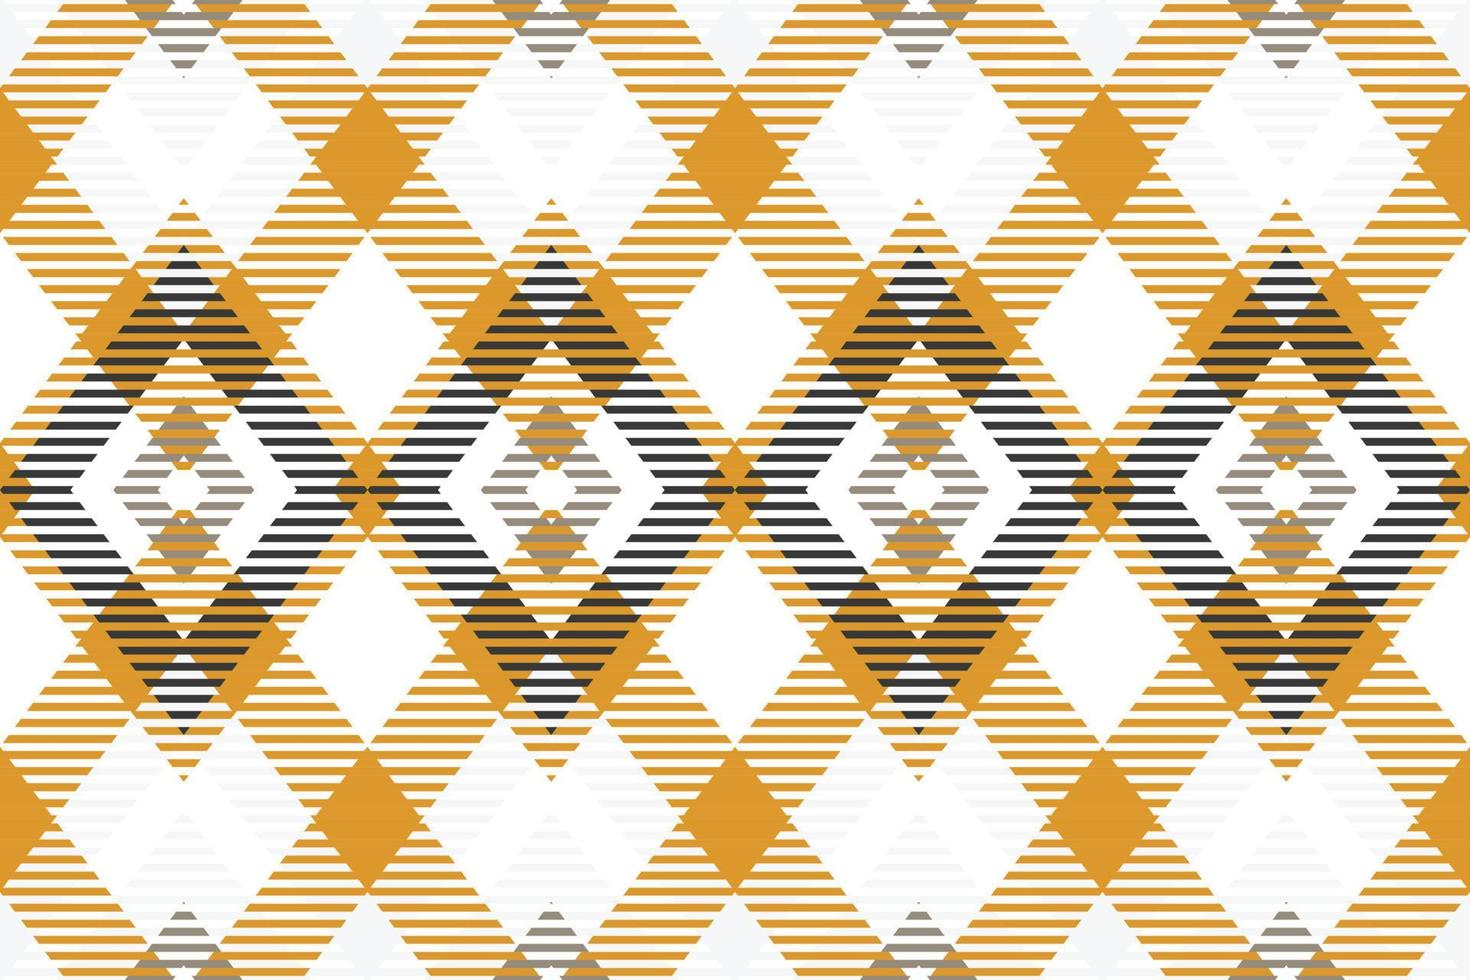 tartan-muster design textur die resultierenden farbblöcke wiederholen sich vertikal und horizontal in einem charakteristischen muster aus quadraten und linien, das als sett bekannt ist. Tartan wird oft als Plaid bezeichnet vektor